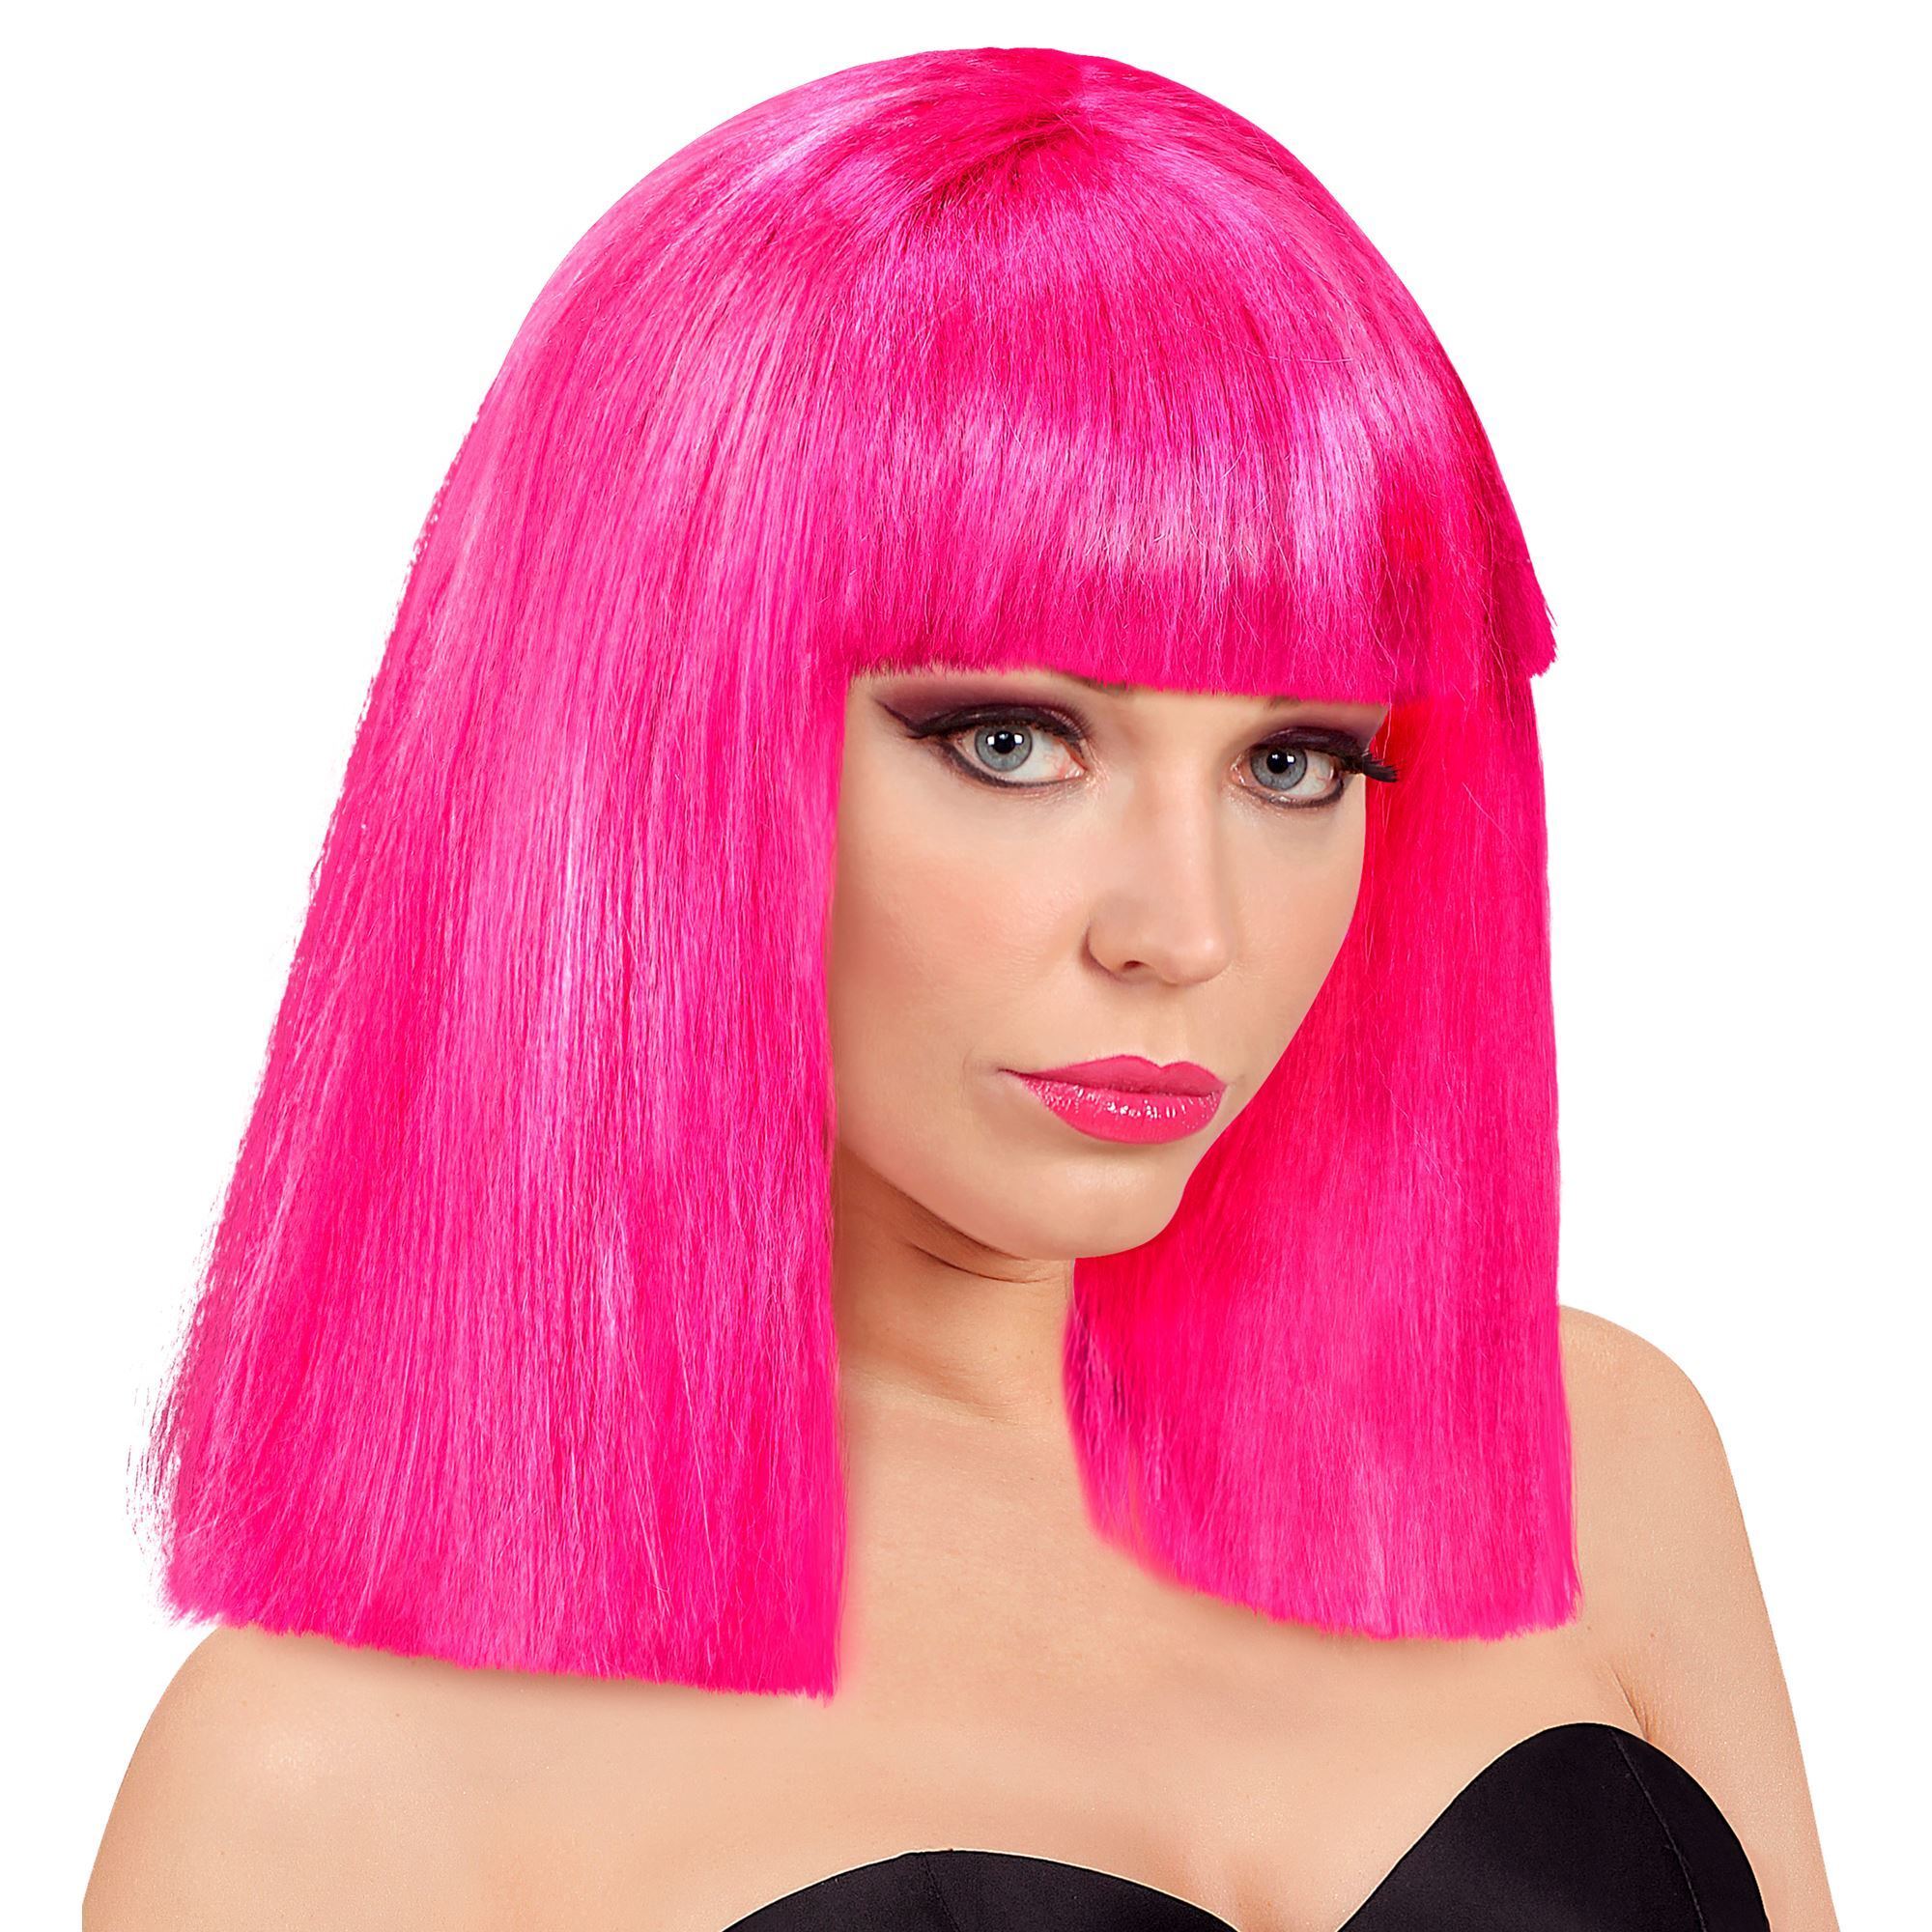 Pruik in het neon roze steil haar voor een disco feestje of foute party